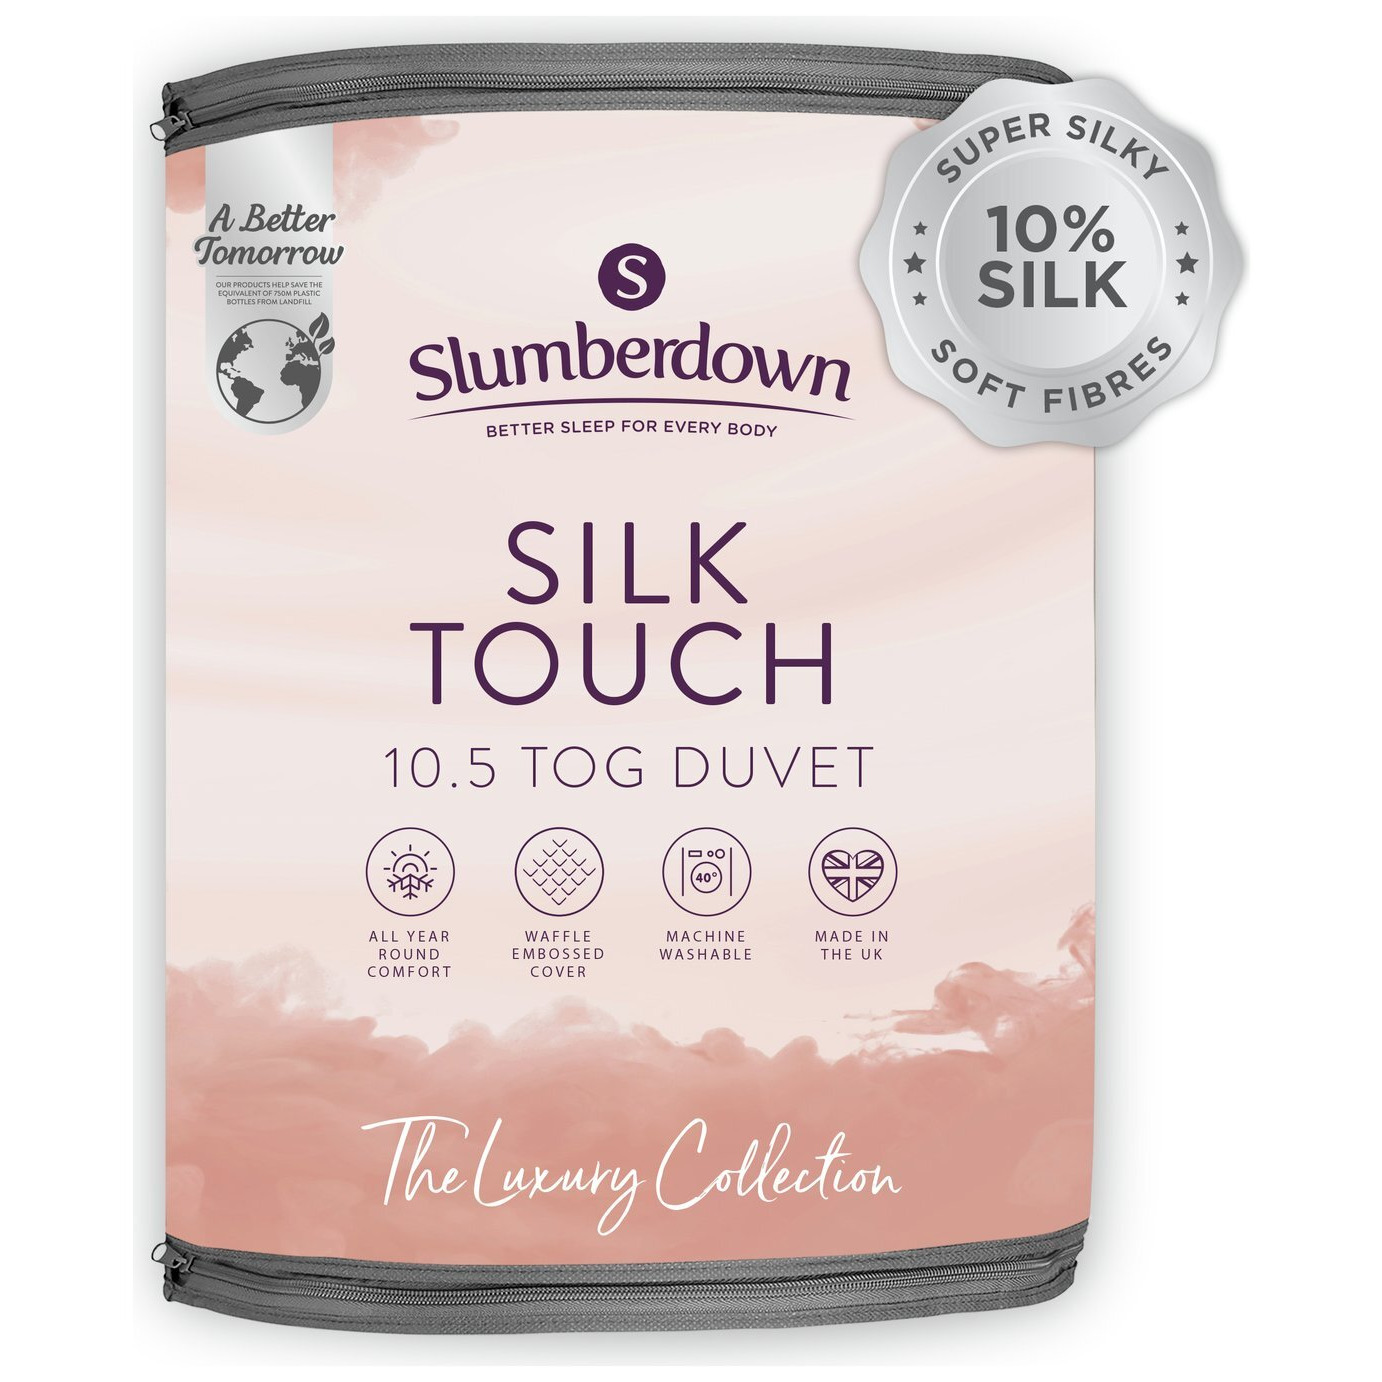 Slumberdown Silk Touch 10.5 Tog Duvet - King Size - image 1